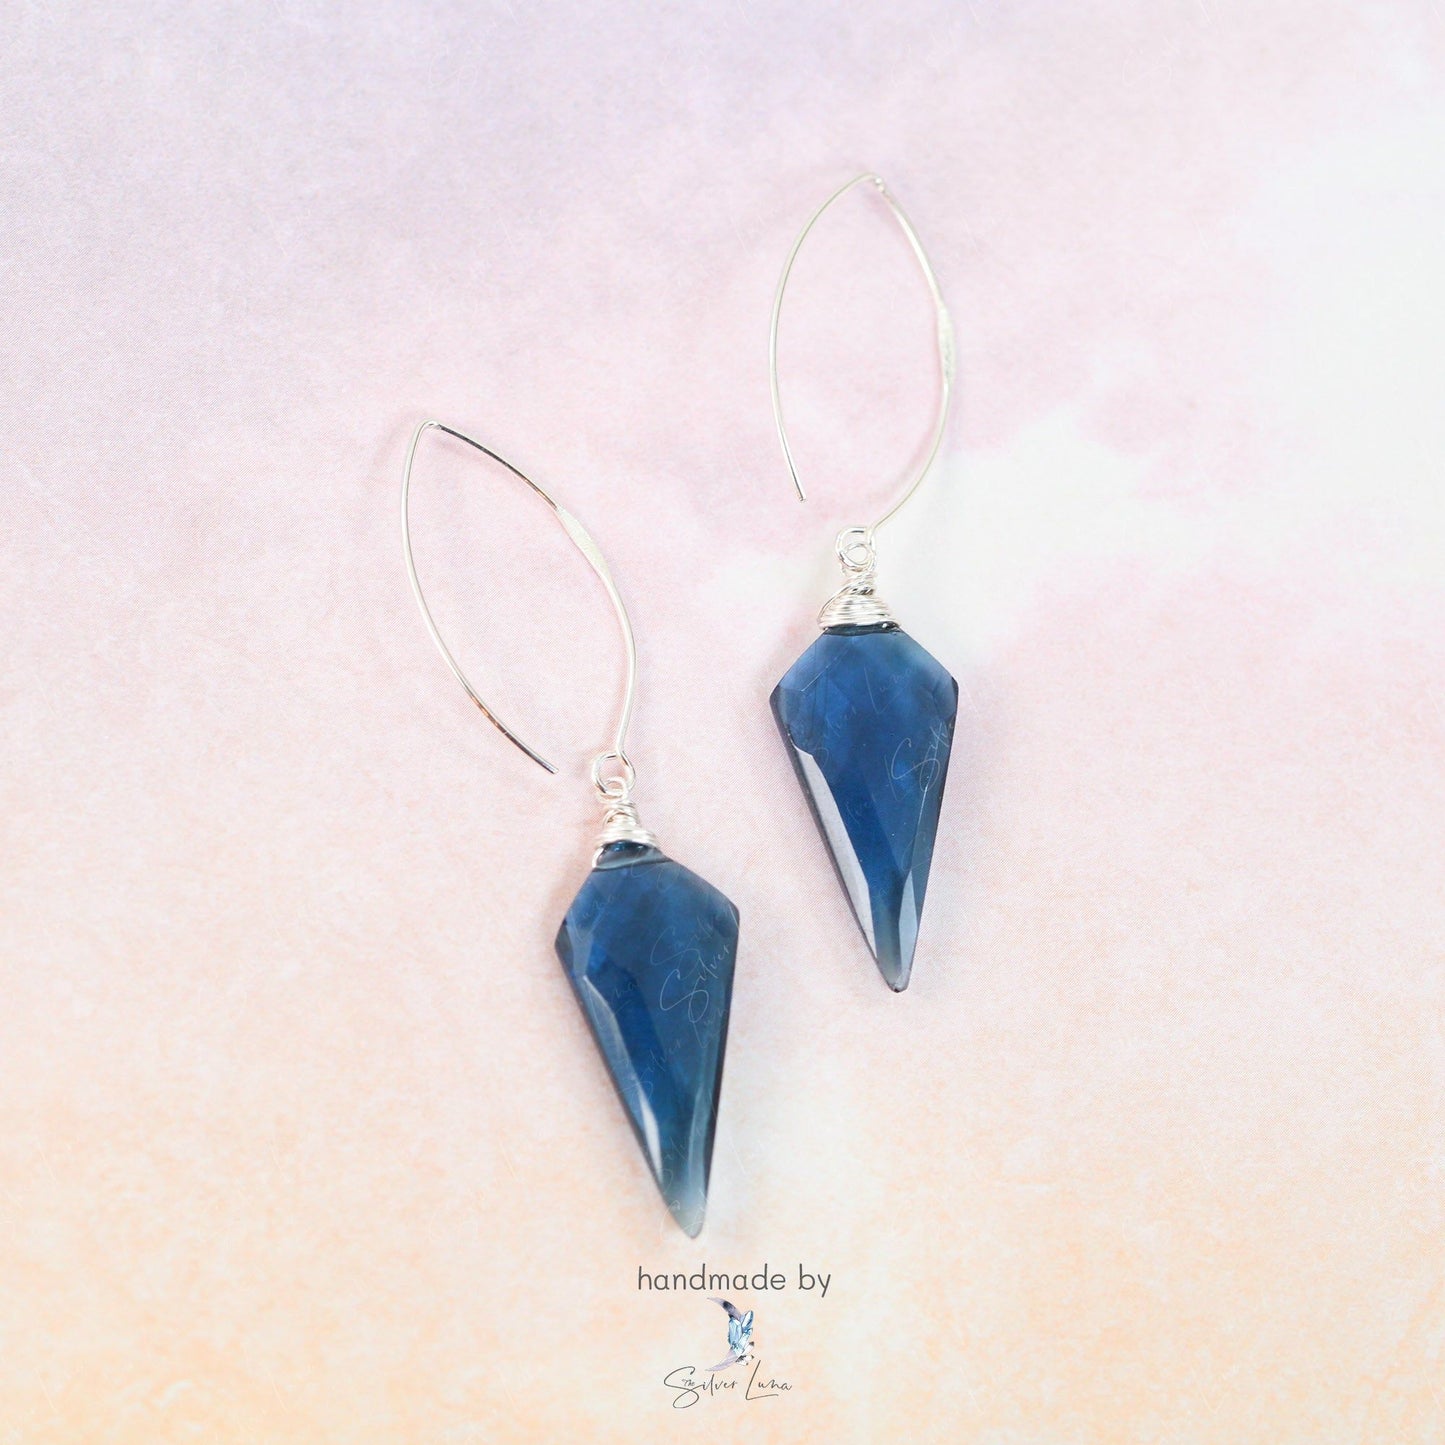 handmade blue quartz earrings